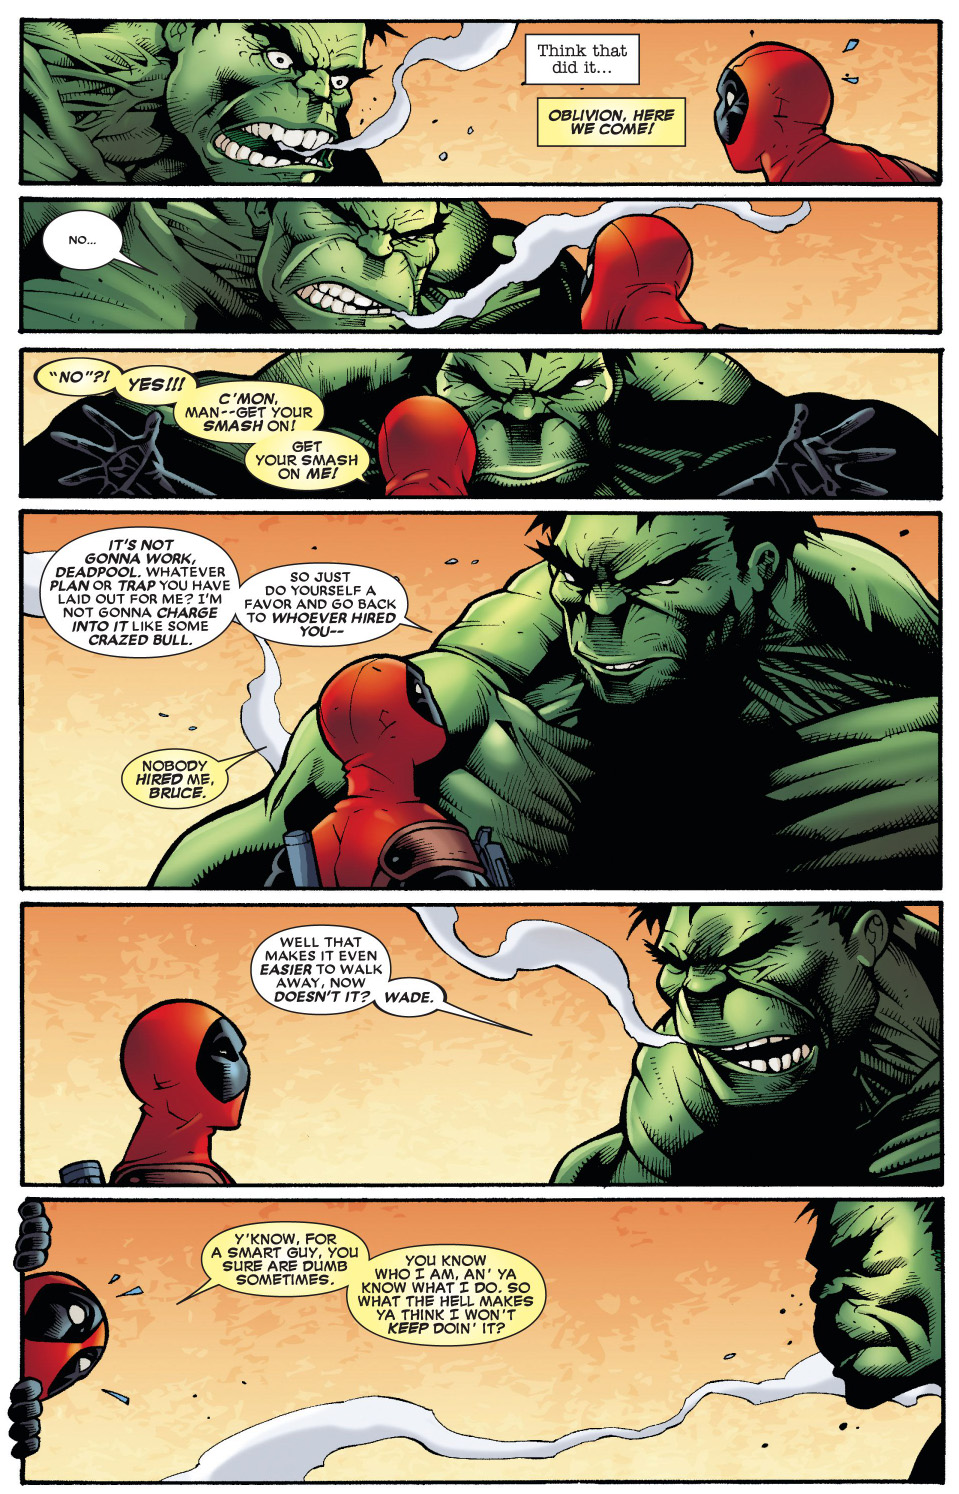 Deadpool Vs. Hulk Backgrounds, Compatible - PC, Mobile, Gadgets| 959x1494 px